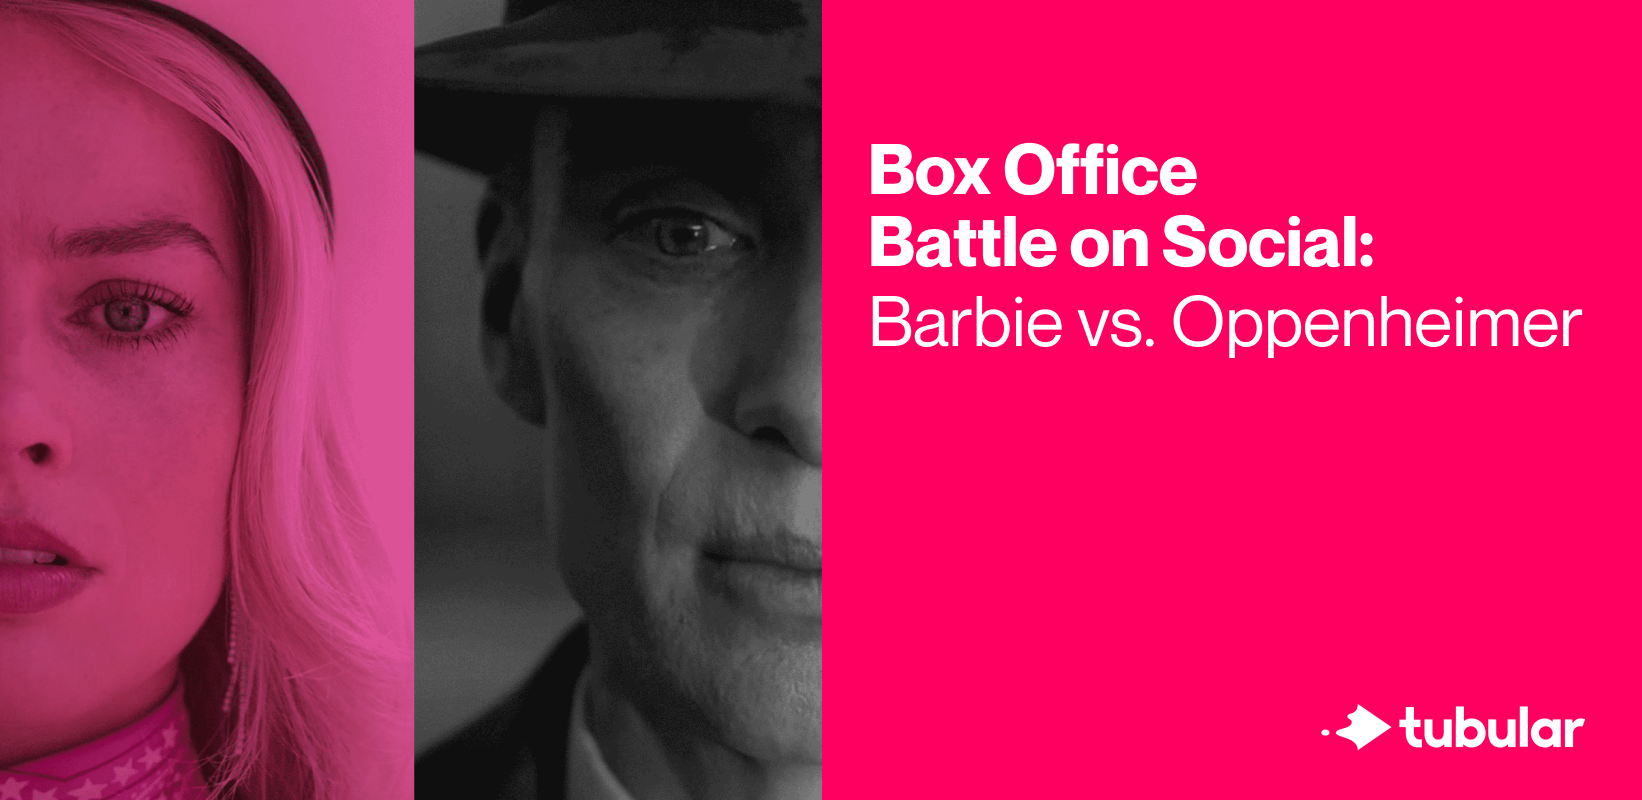 Box Office Battle on Social: Barbie vs. Oppenheimer